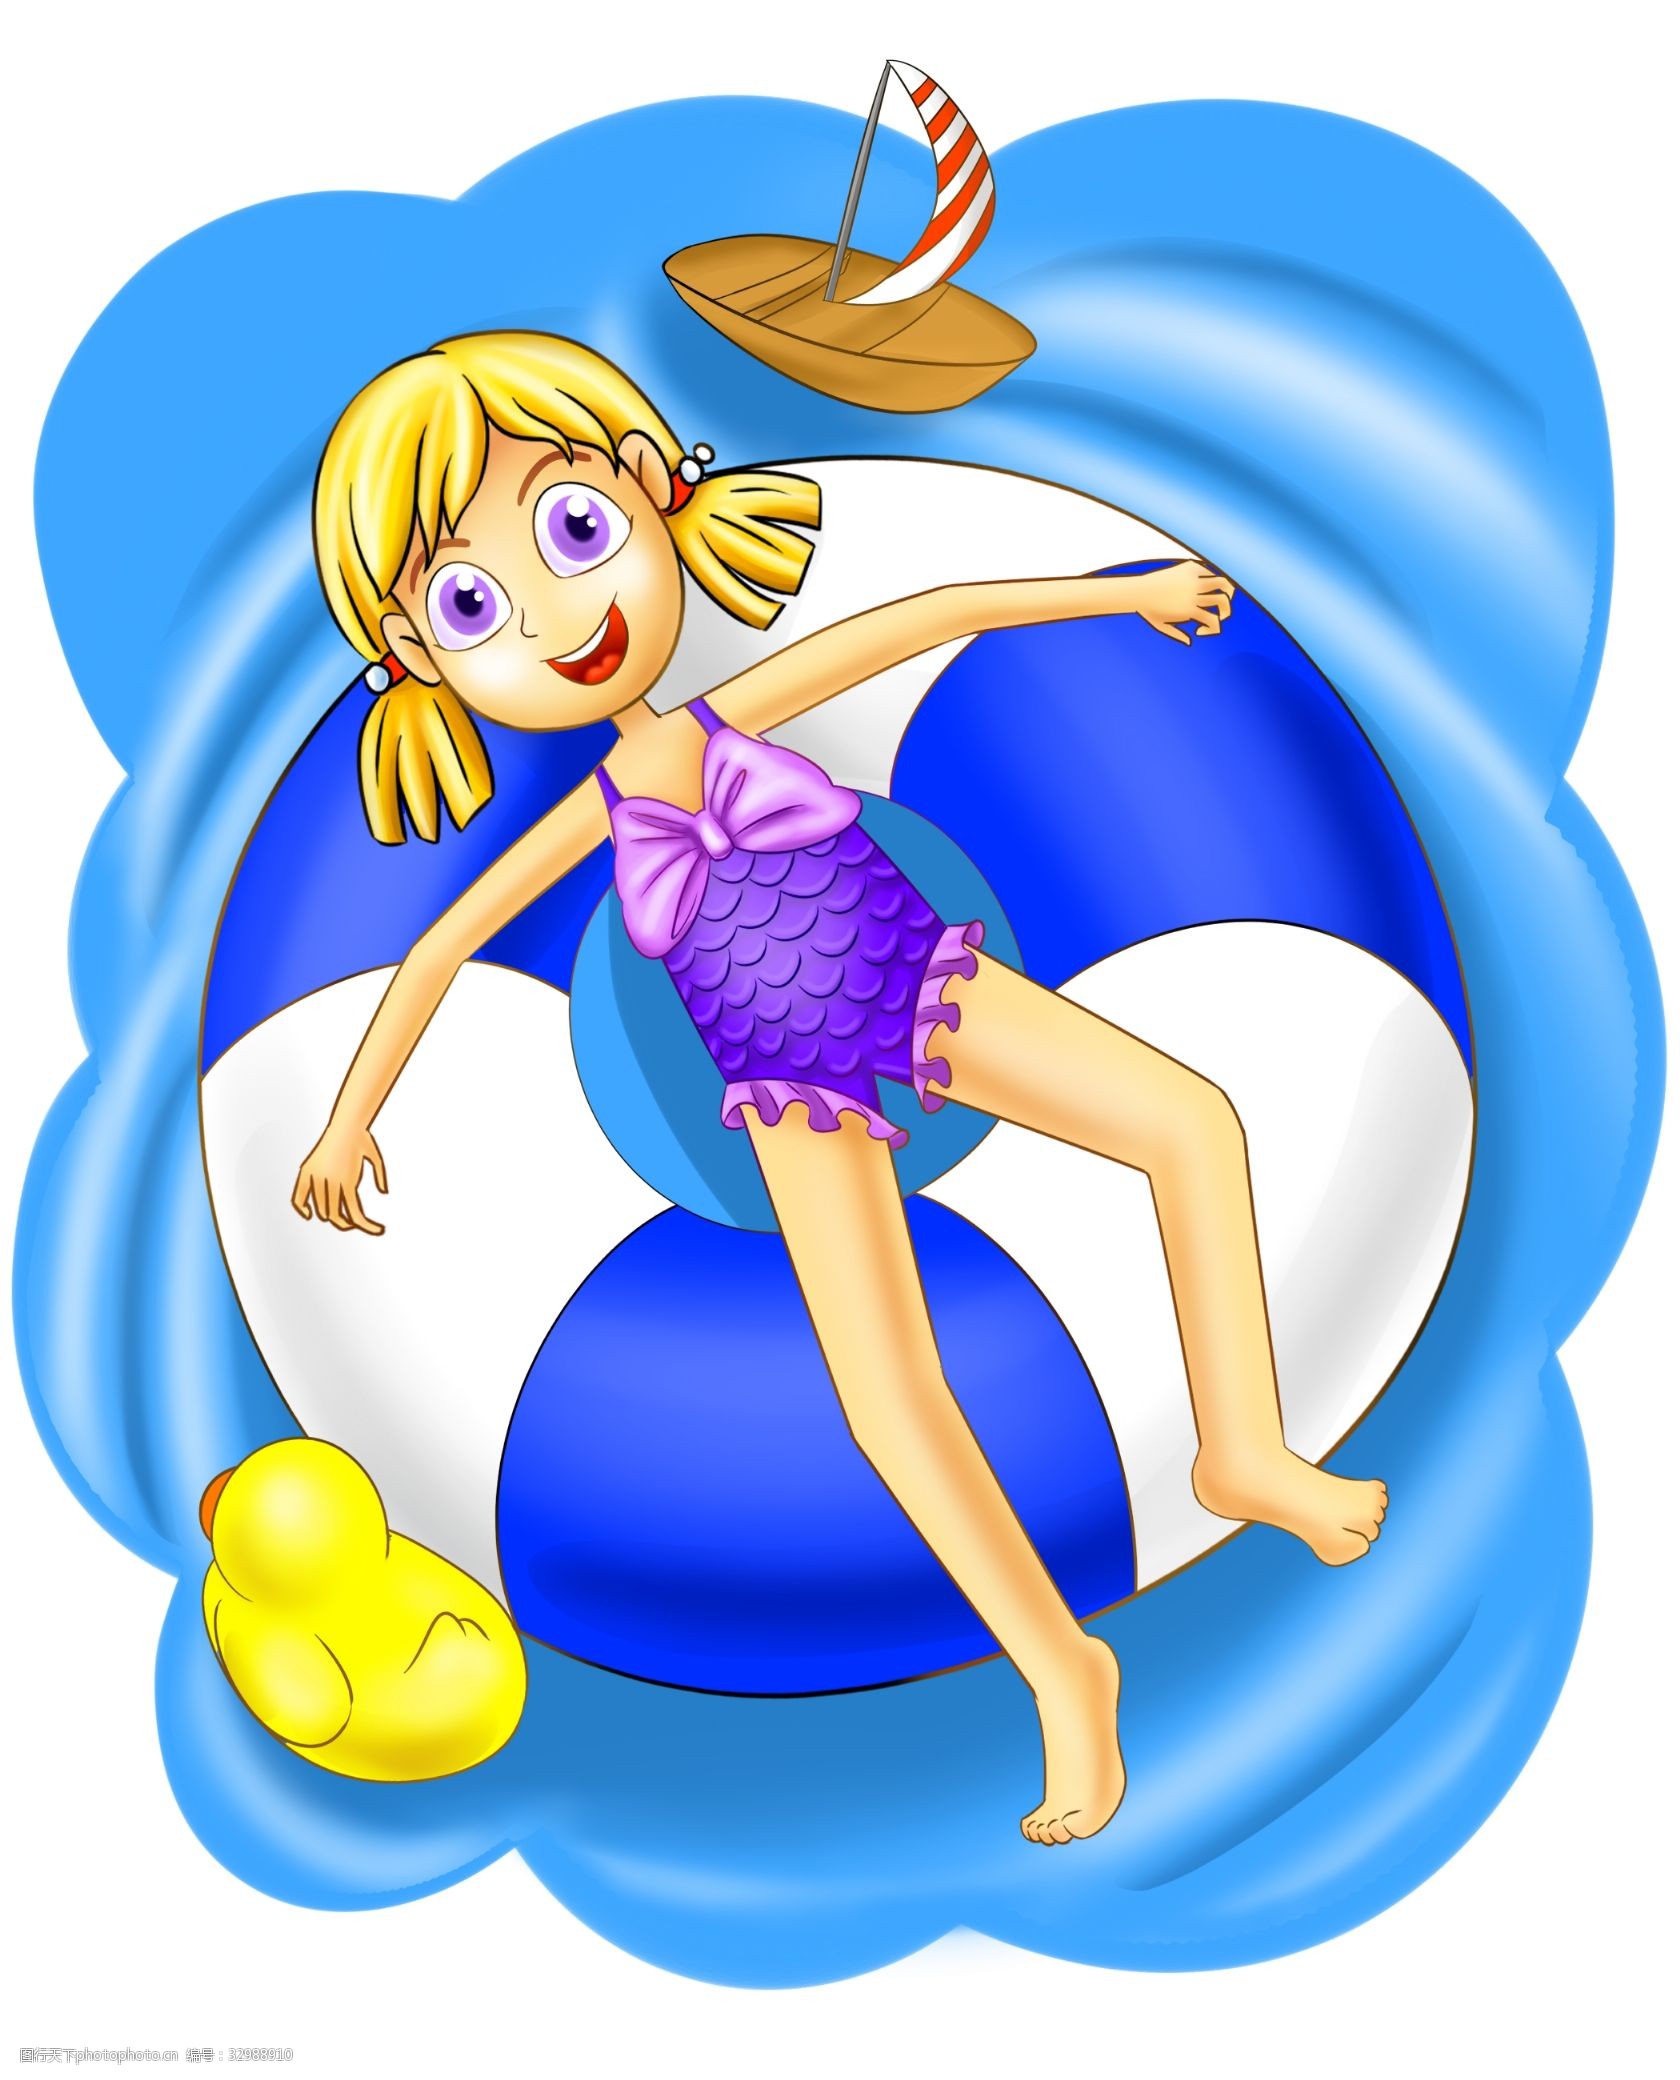 关键词:游泳的小女孩插画 游泳人物插画 游泳的小女孩 游泳健身 黄色